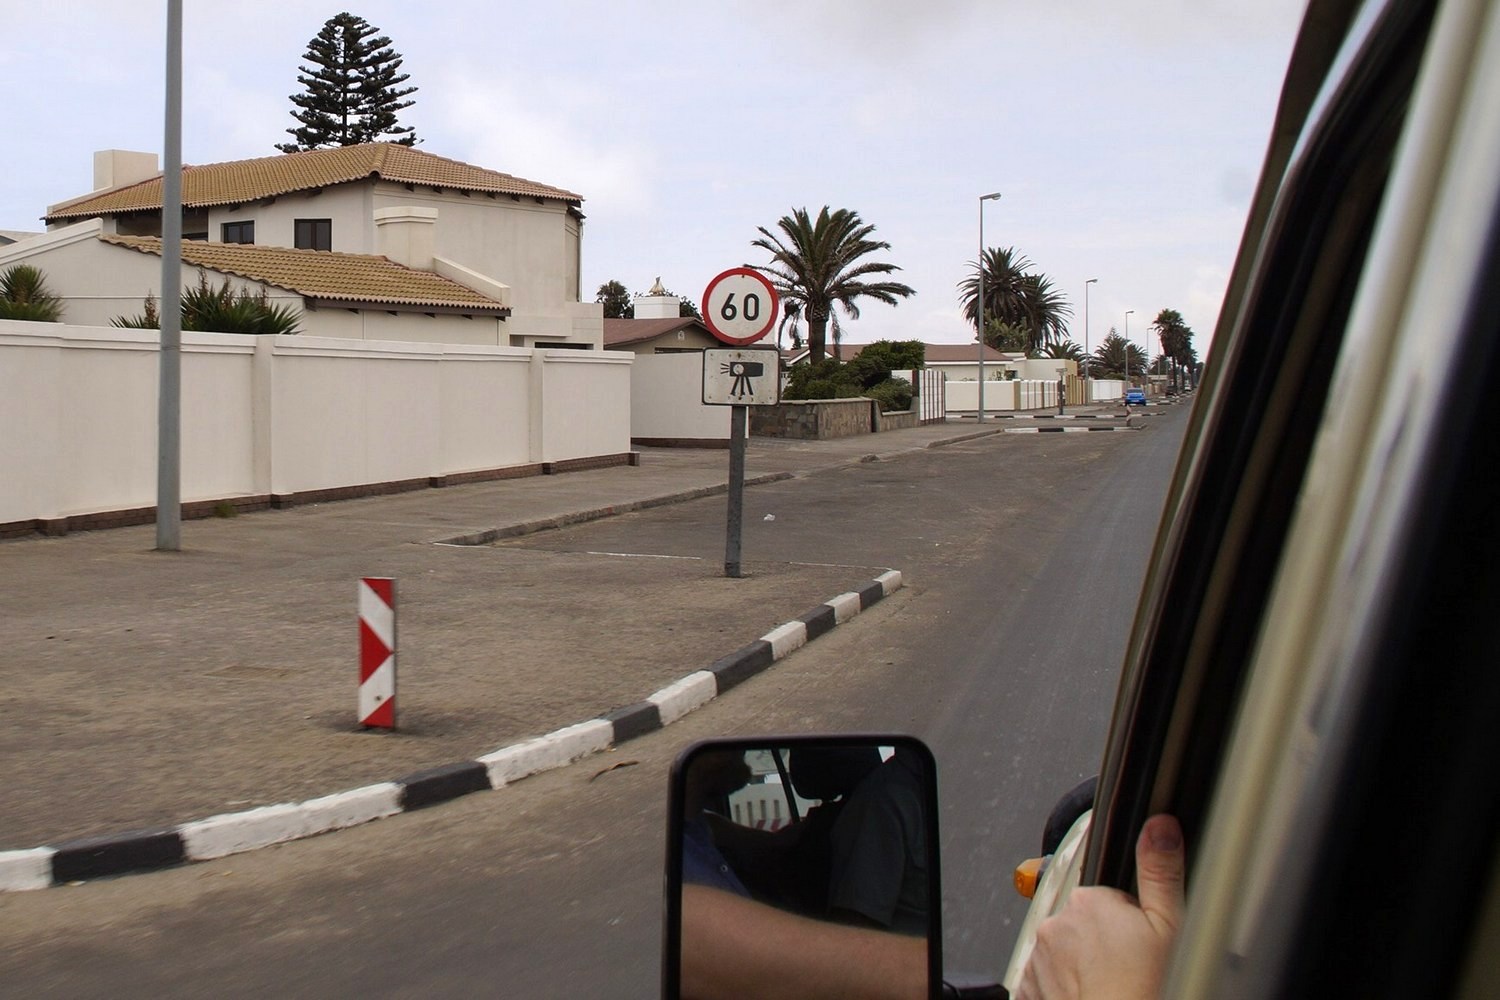 Namíbia, a Toyoták Országa, autóbuzi szemmel 21